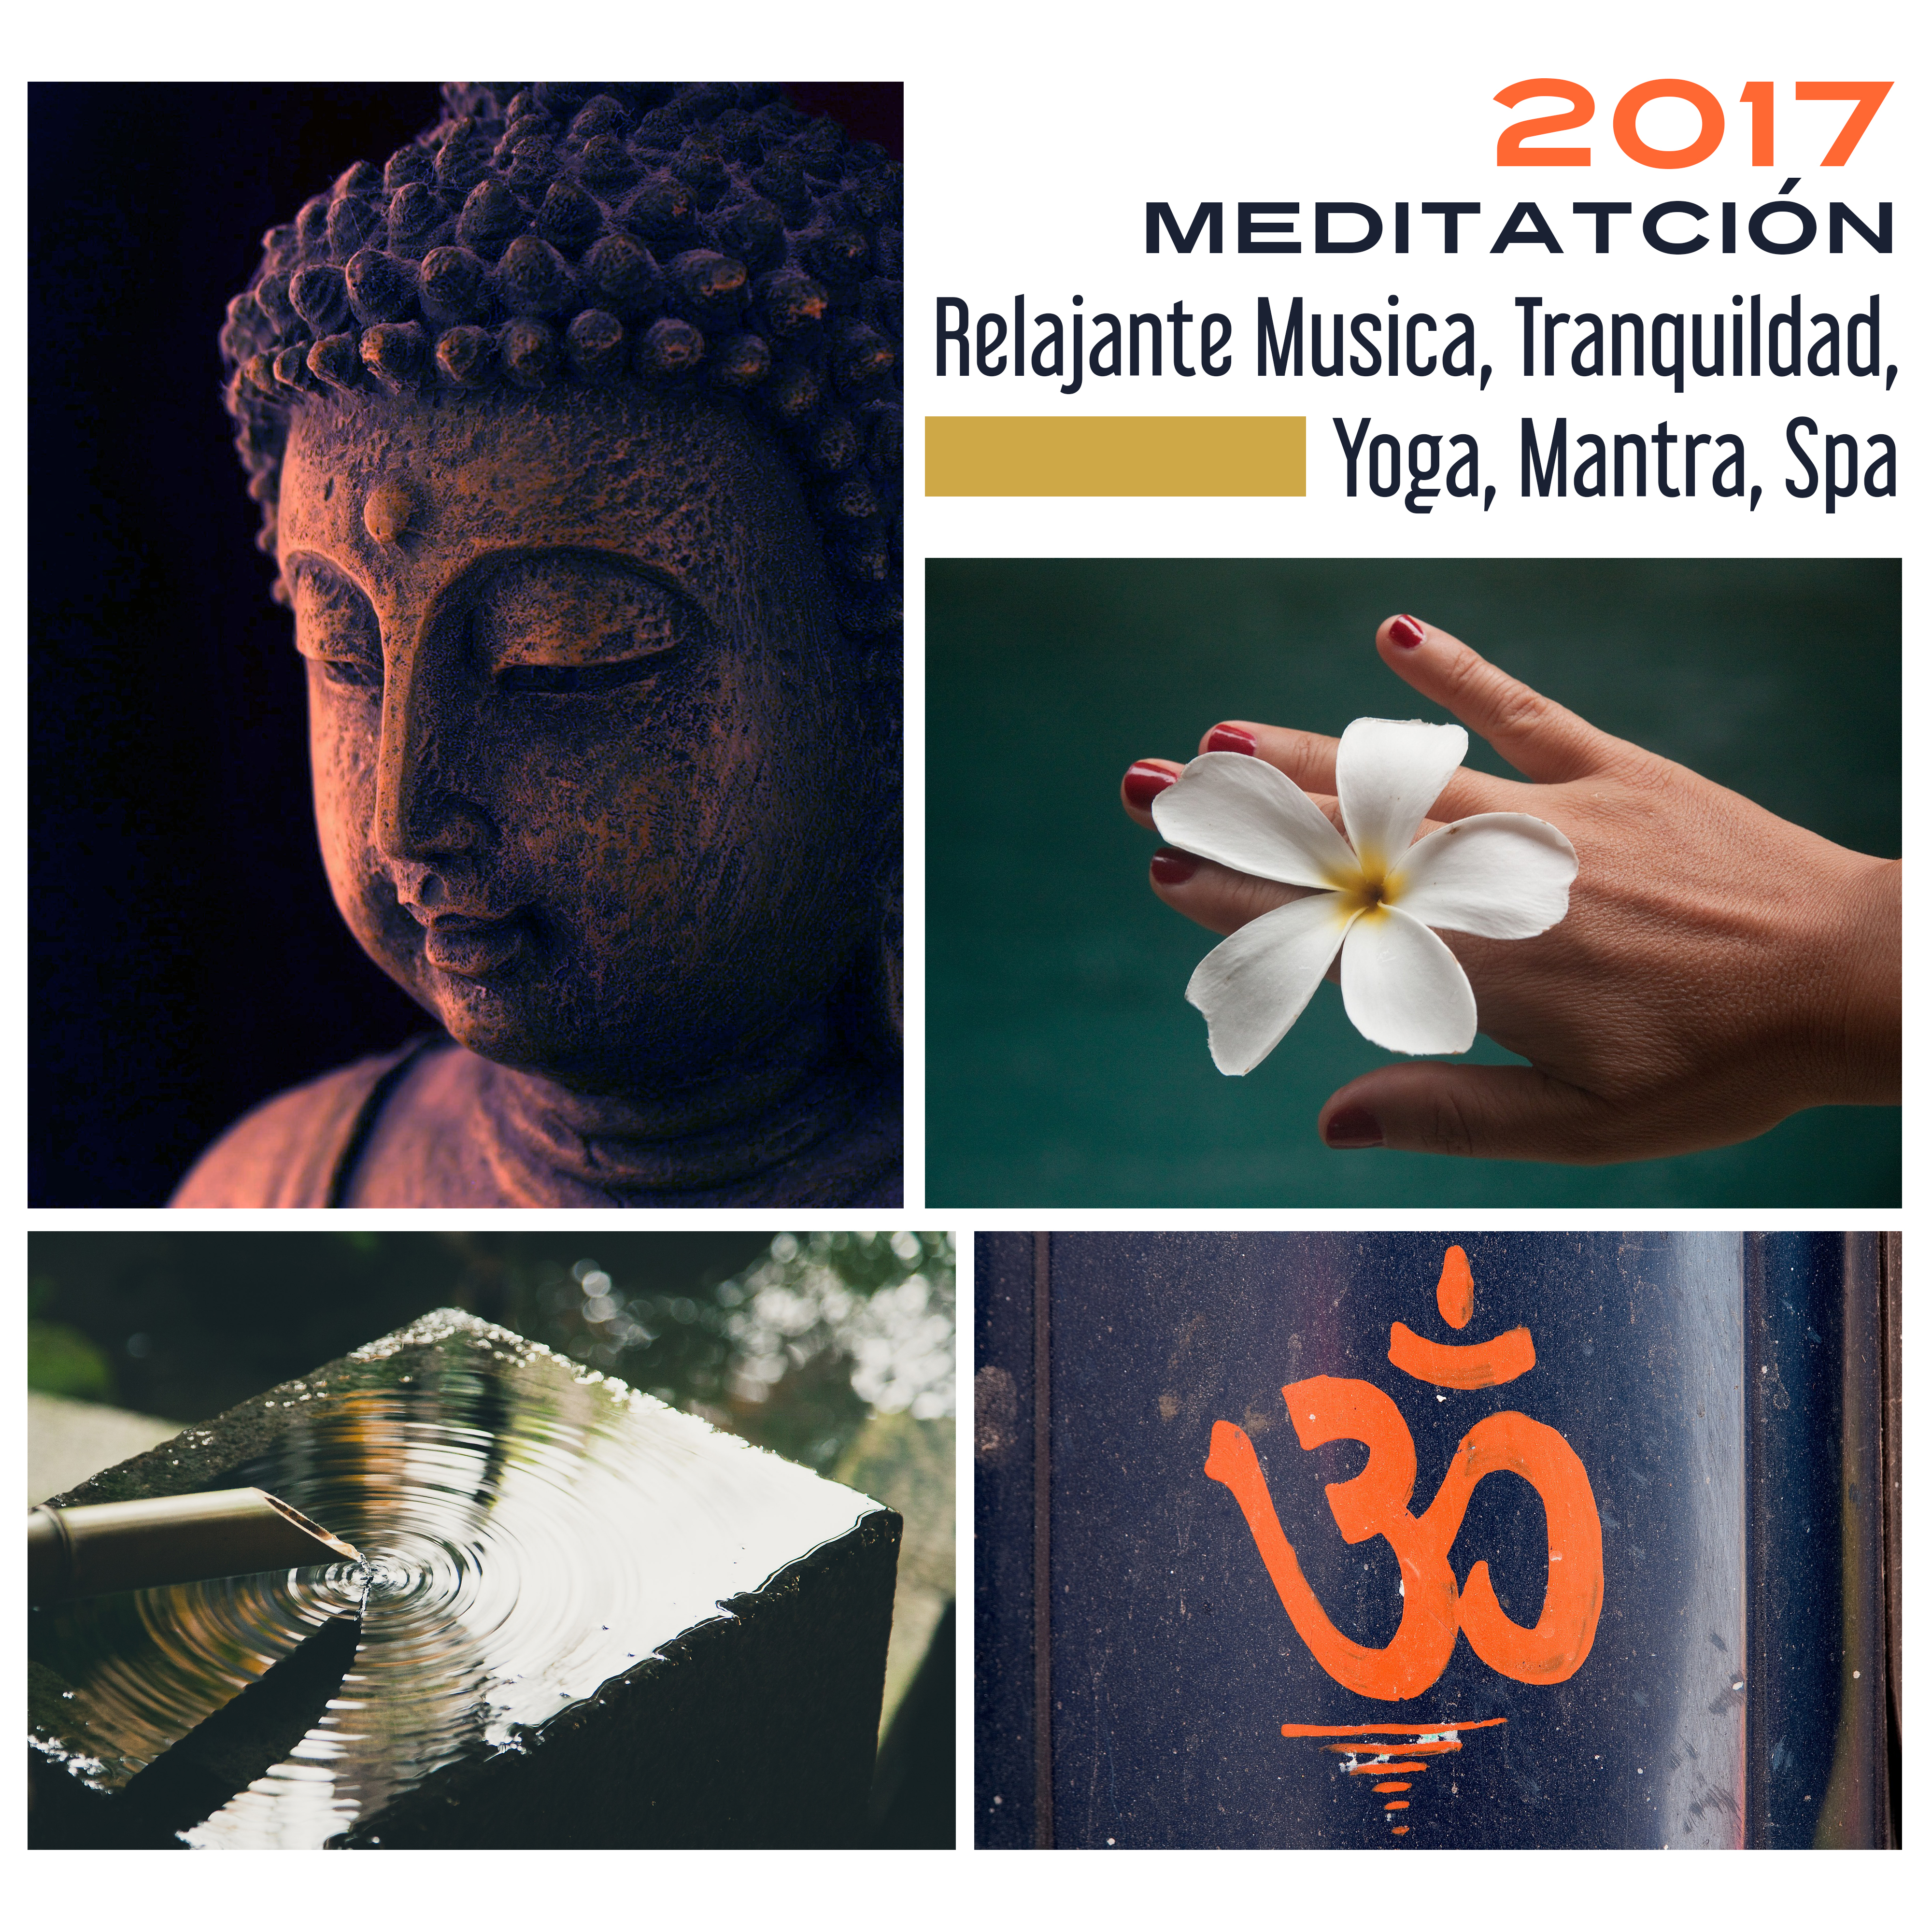 2017 Meditatción: Relajante Musica, Tranquildad, Yoga, Mantra, Spa